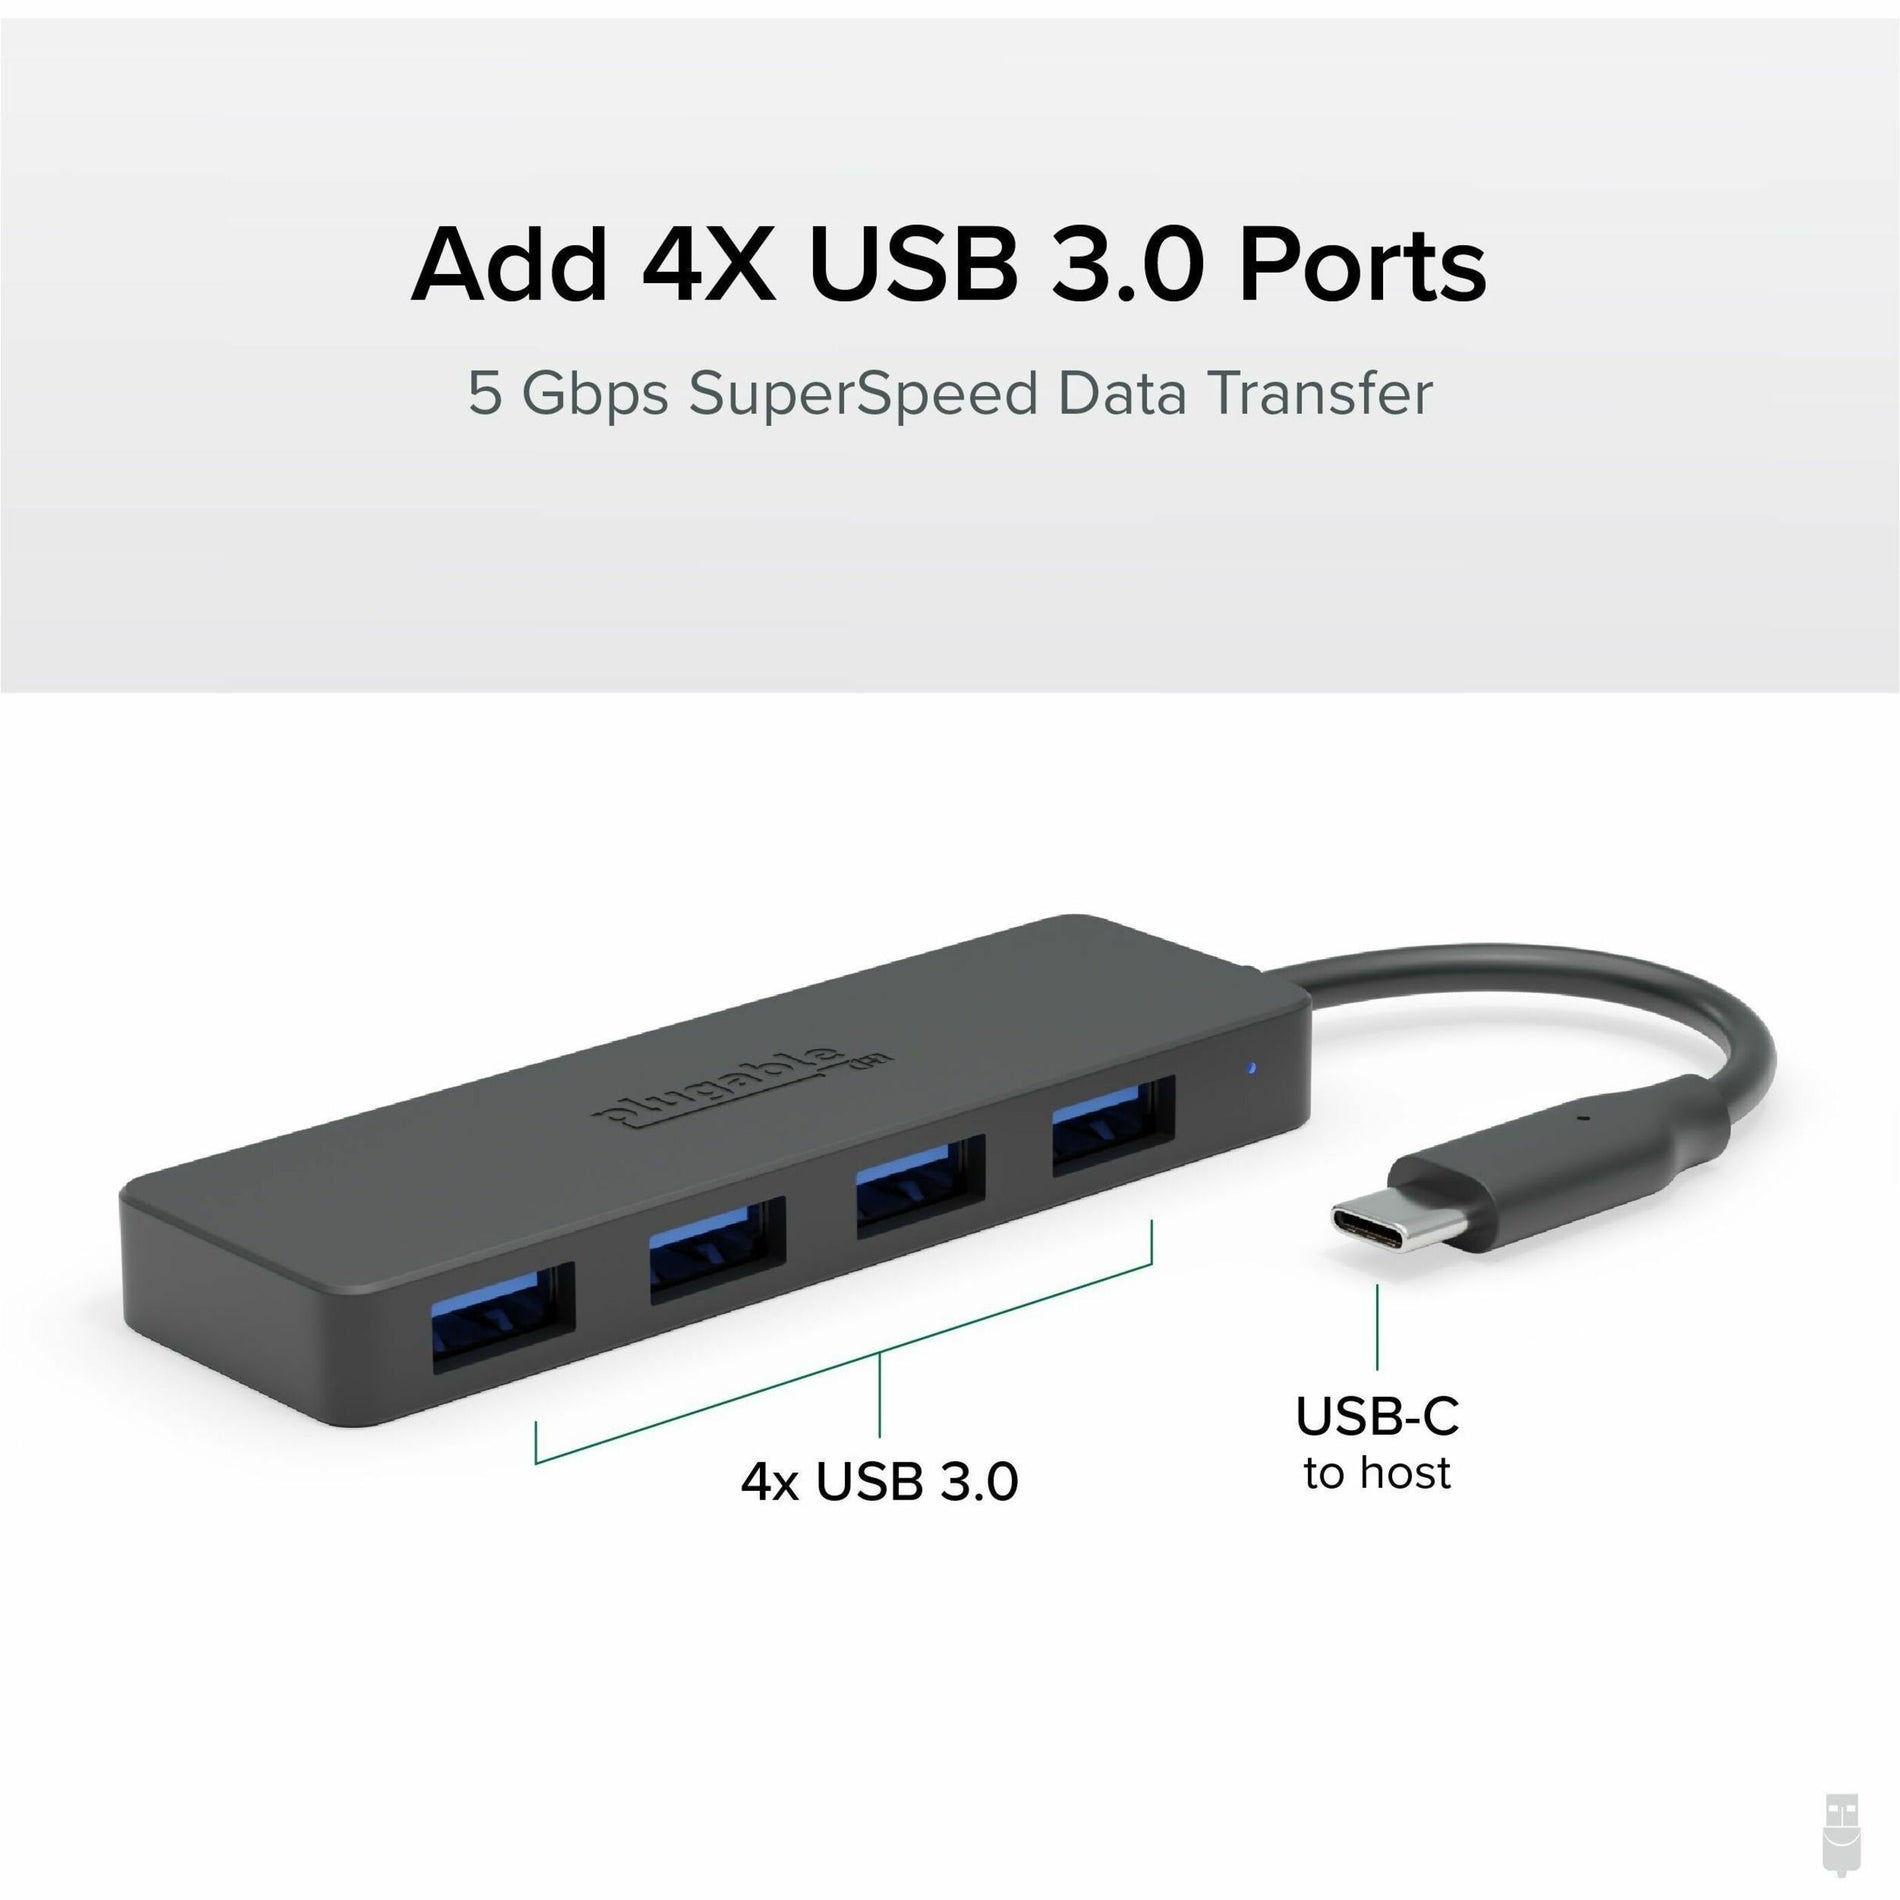 普拉格 USBC-HUB4A USB集线器，4个USB 3.0端口，黑色 Puglable 普拉格